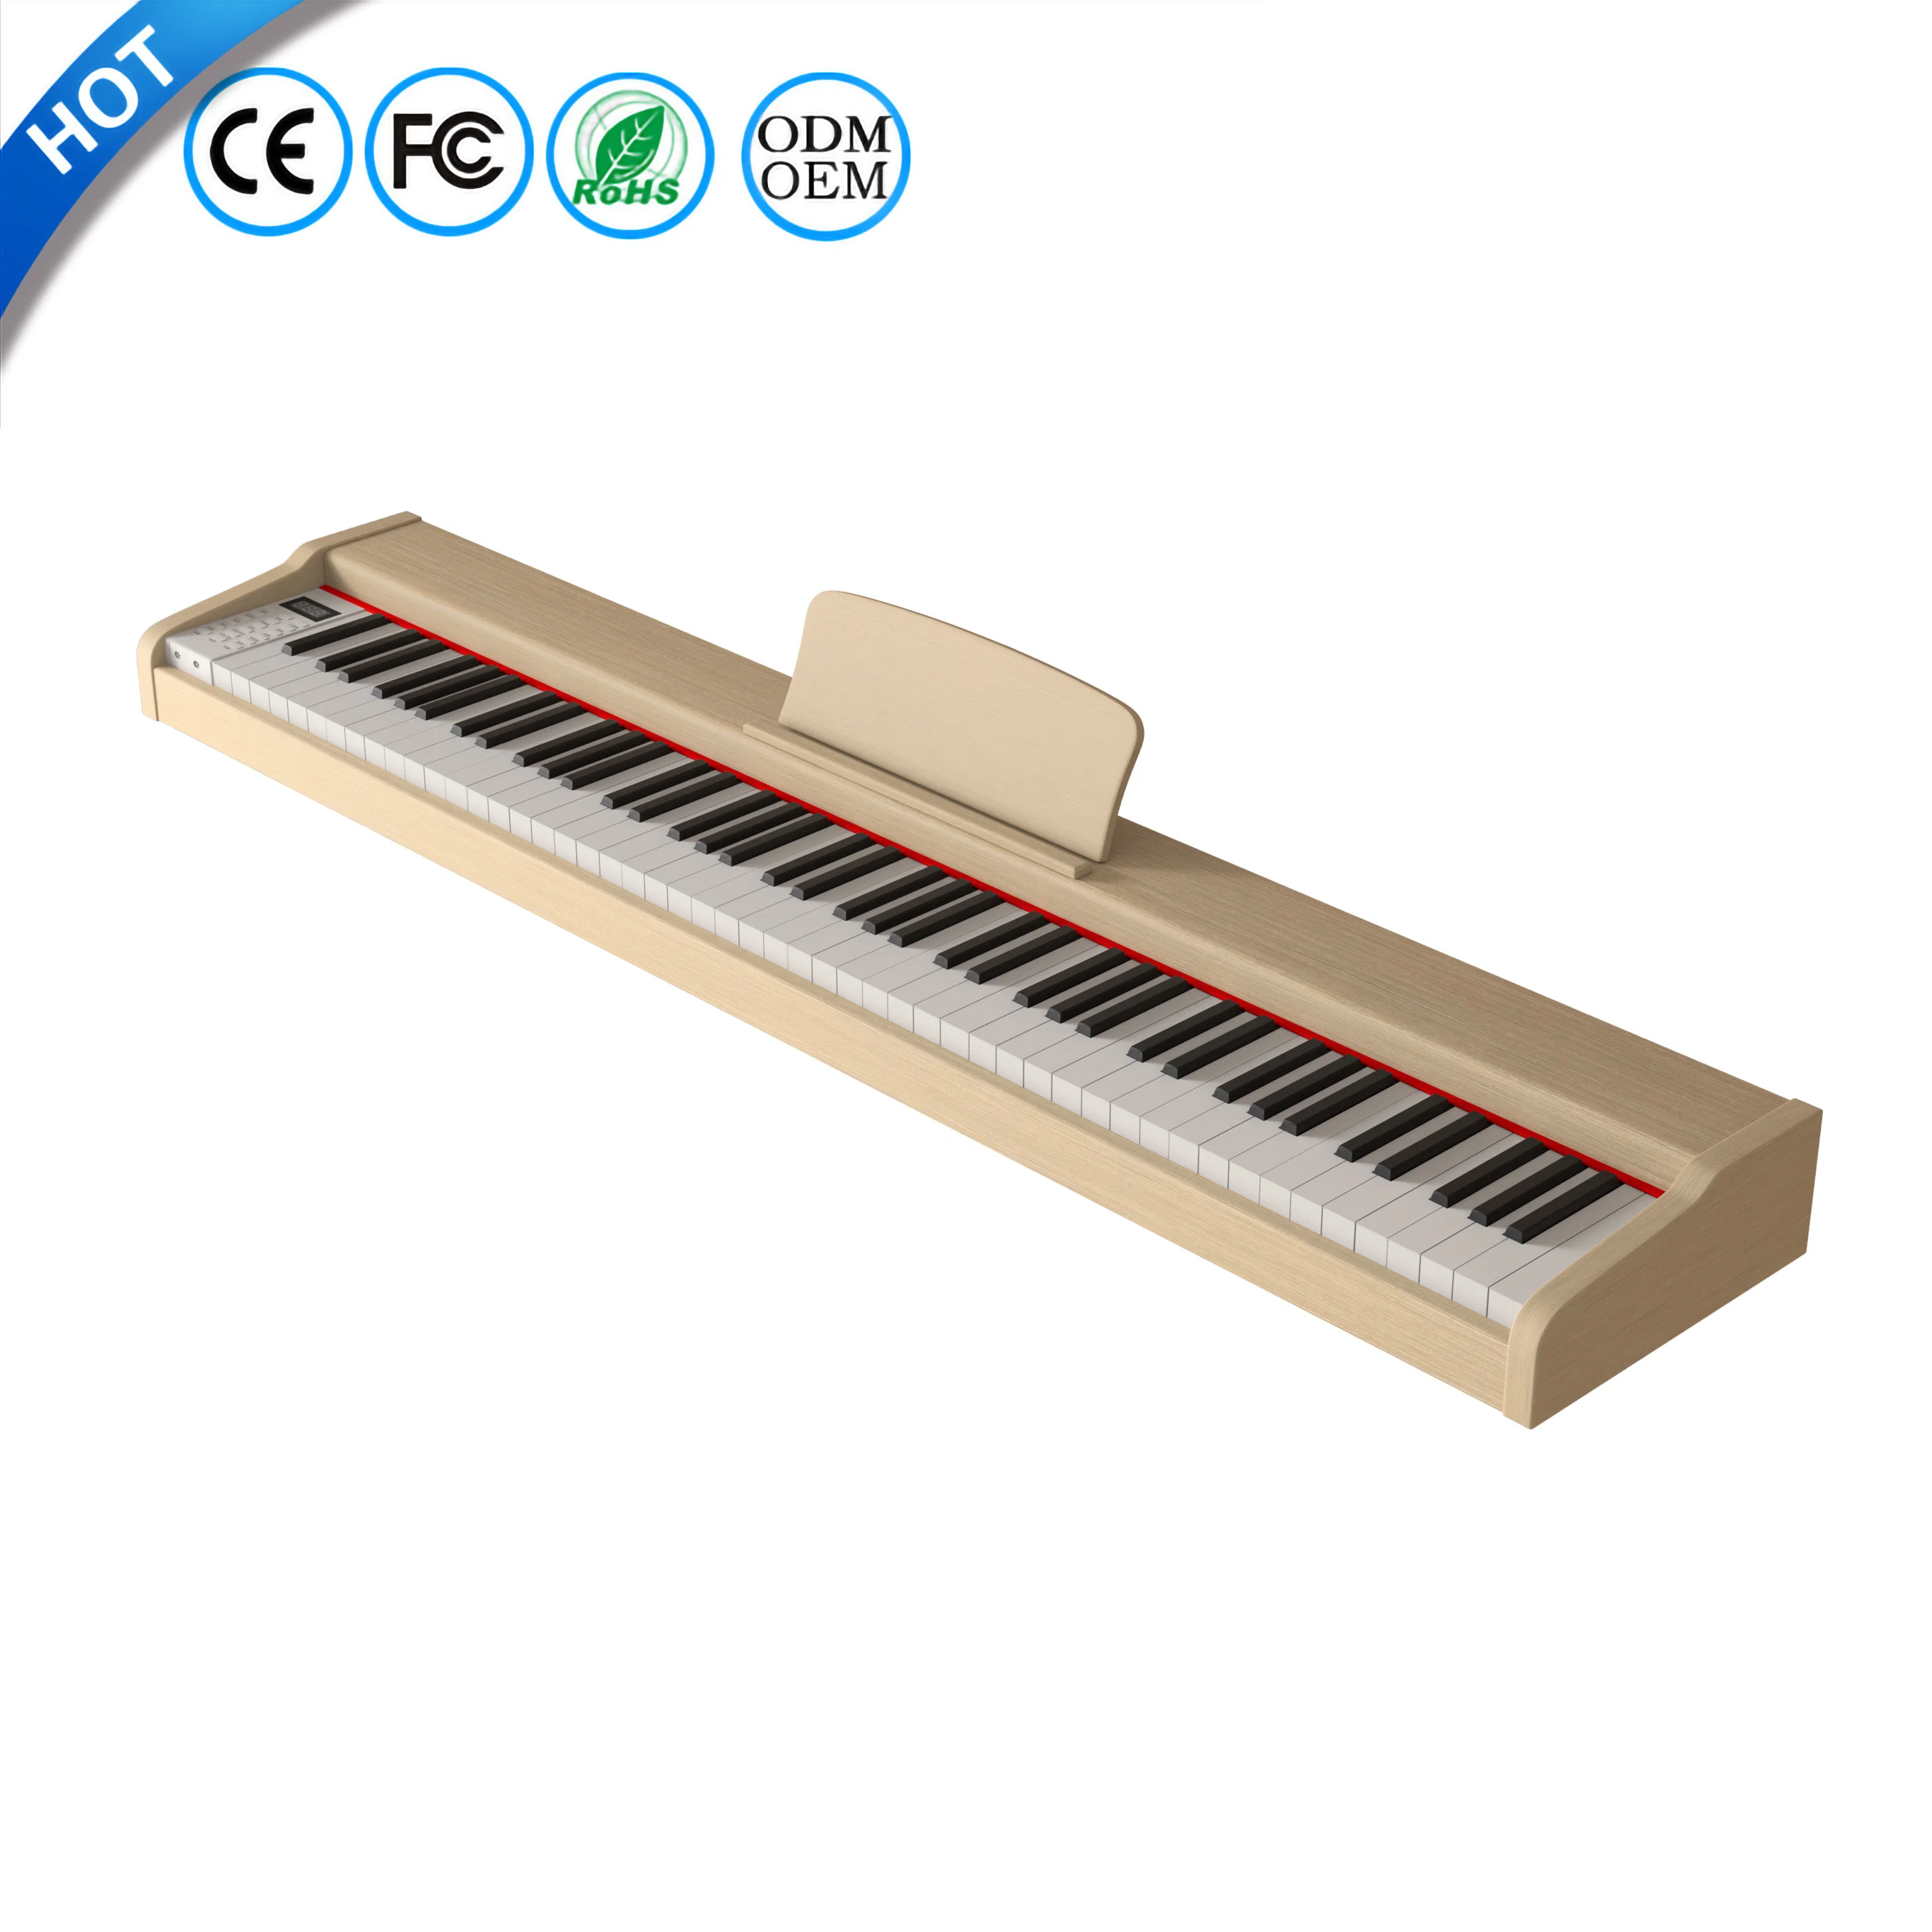 Digital Piano 88 teclas ponderadas controlador MIDI teclado vertical Piano Precio teclado de piano OEM eléctrico